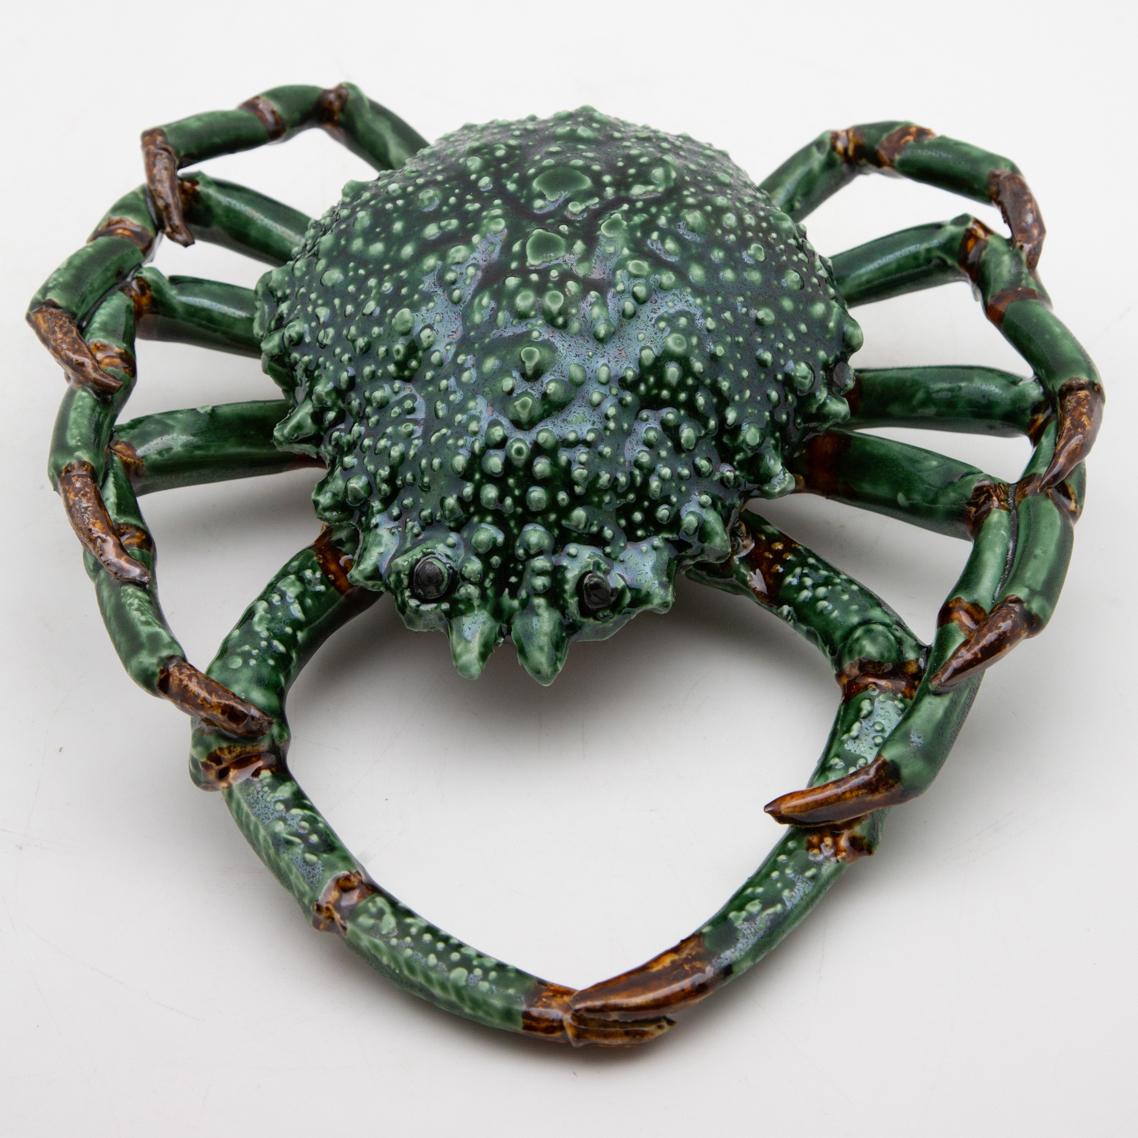 green spider crab